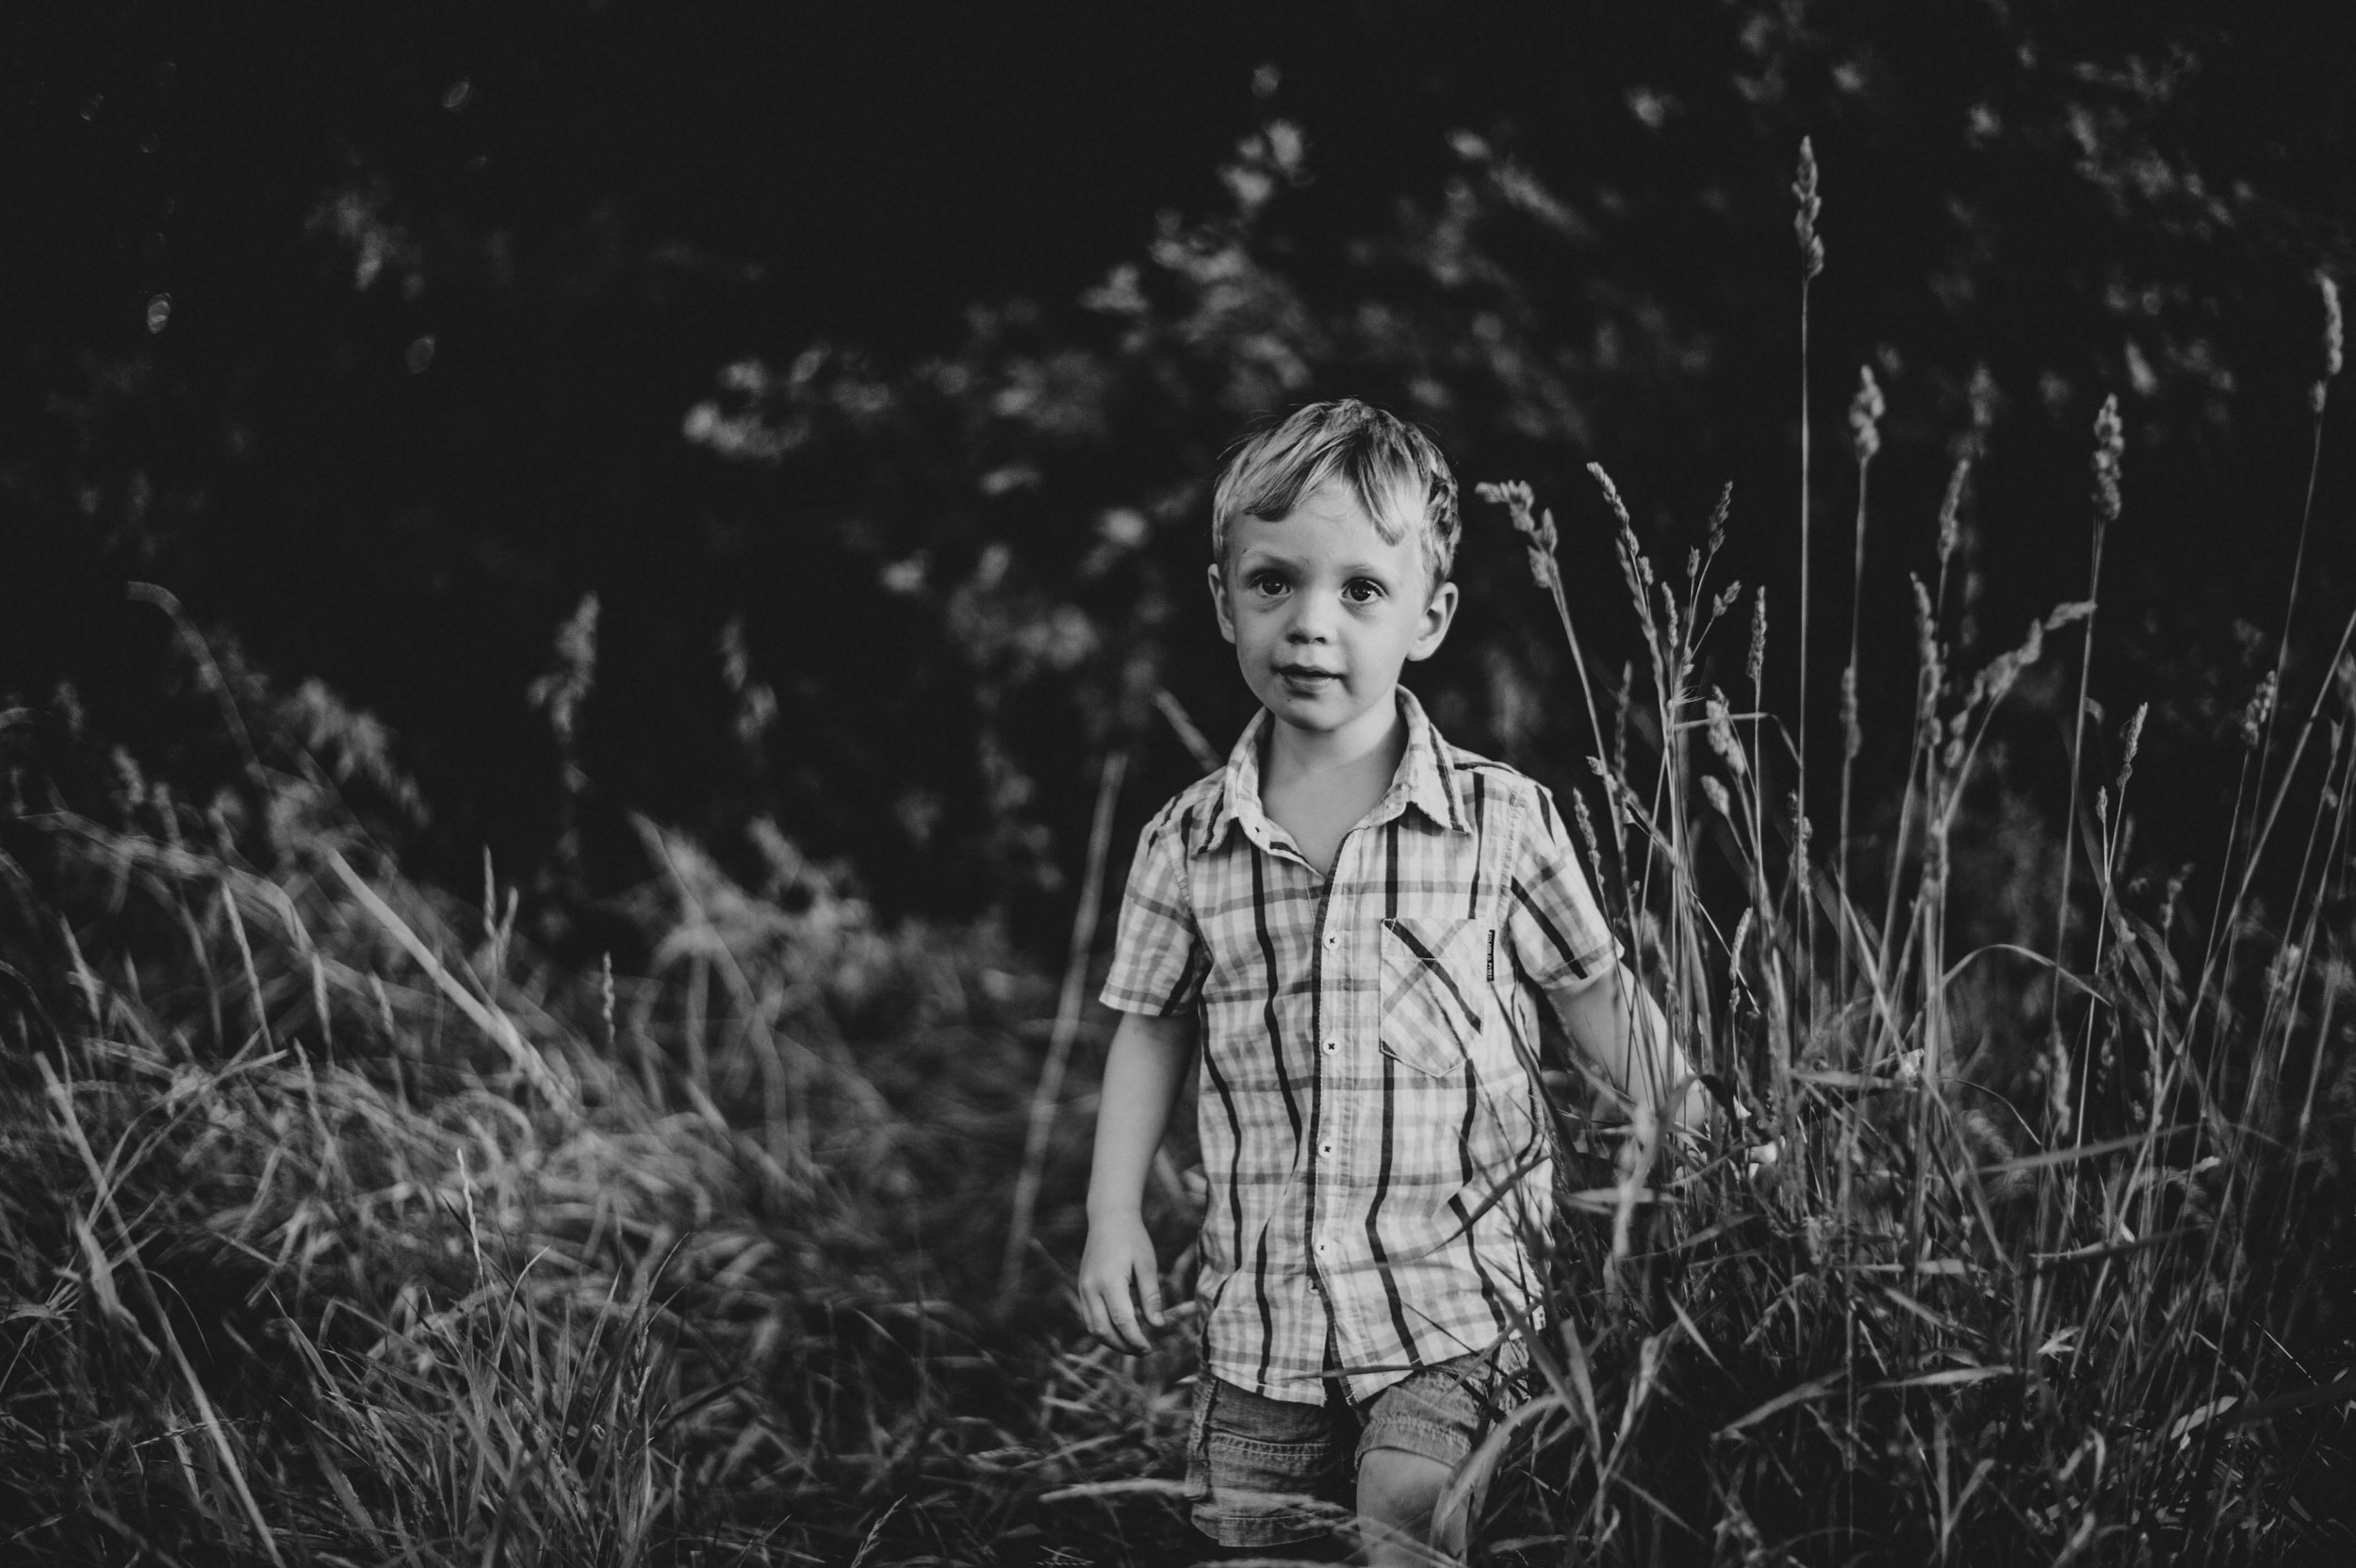 Little boy in long grass Summer Evening Essex UK Documentary Portrait Photographer